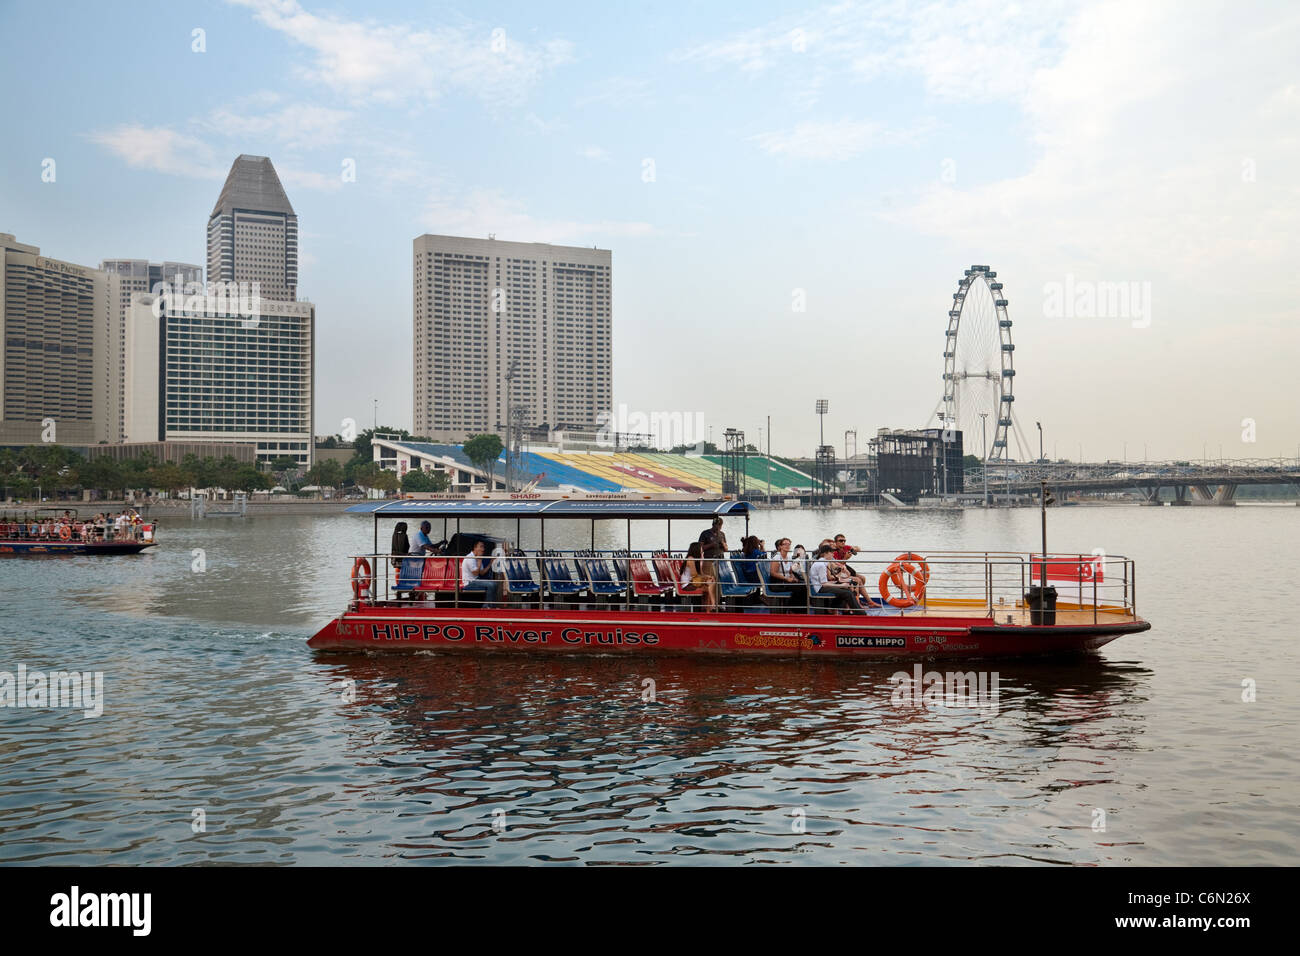 Un bateau de tourisme traverse marina bay avec le flyer en arrière-plan, l'Asie Singapour Banque D'Images